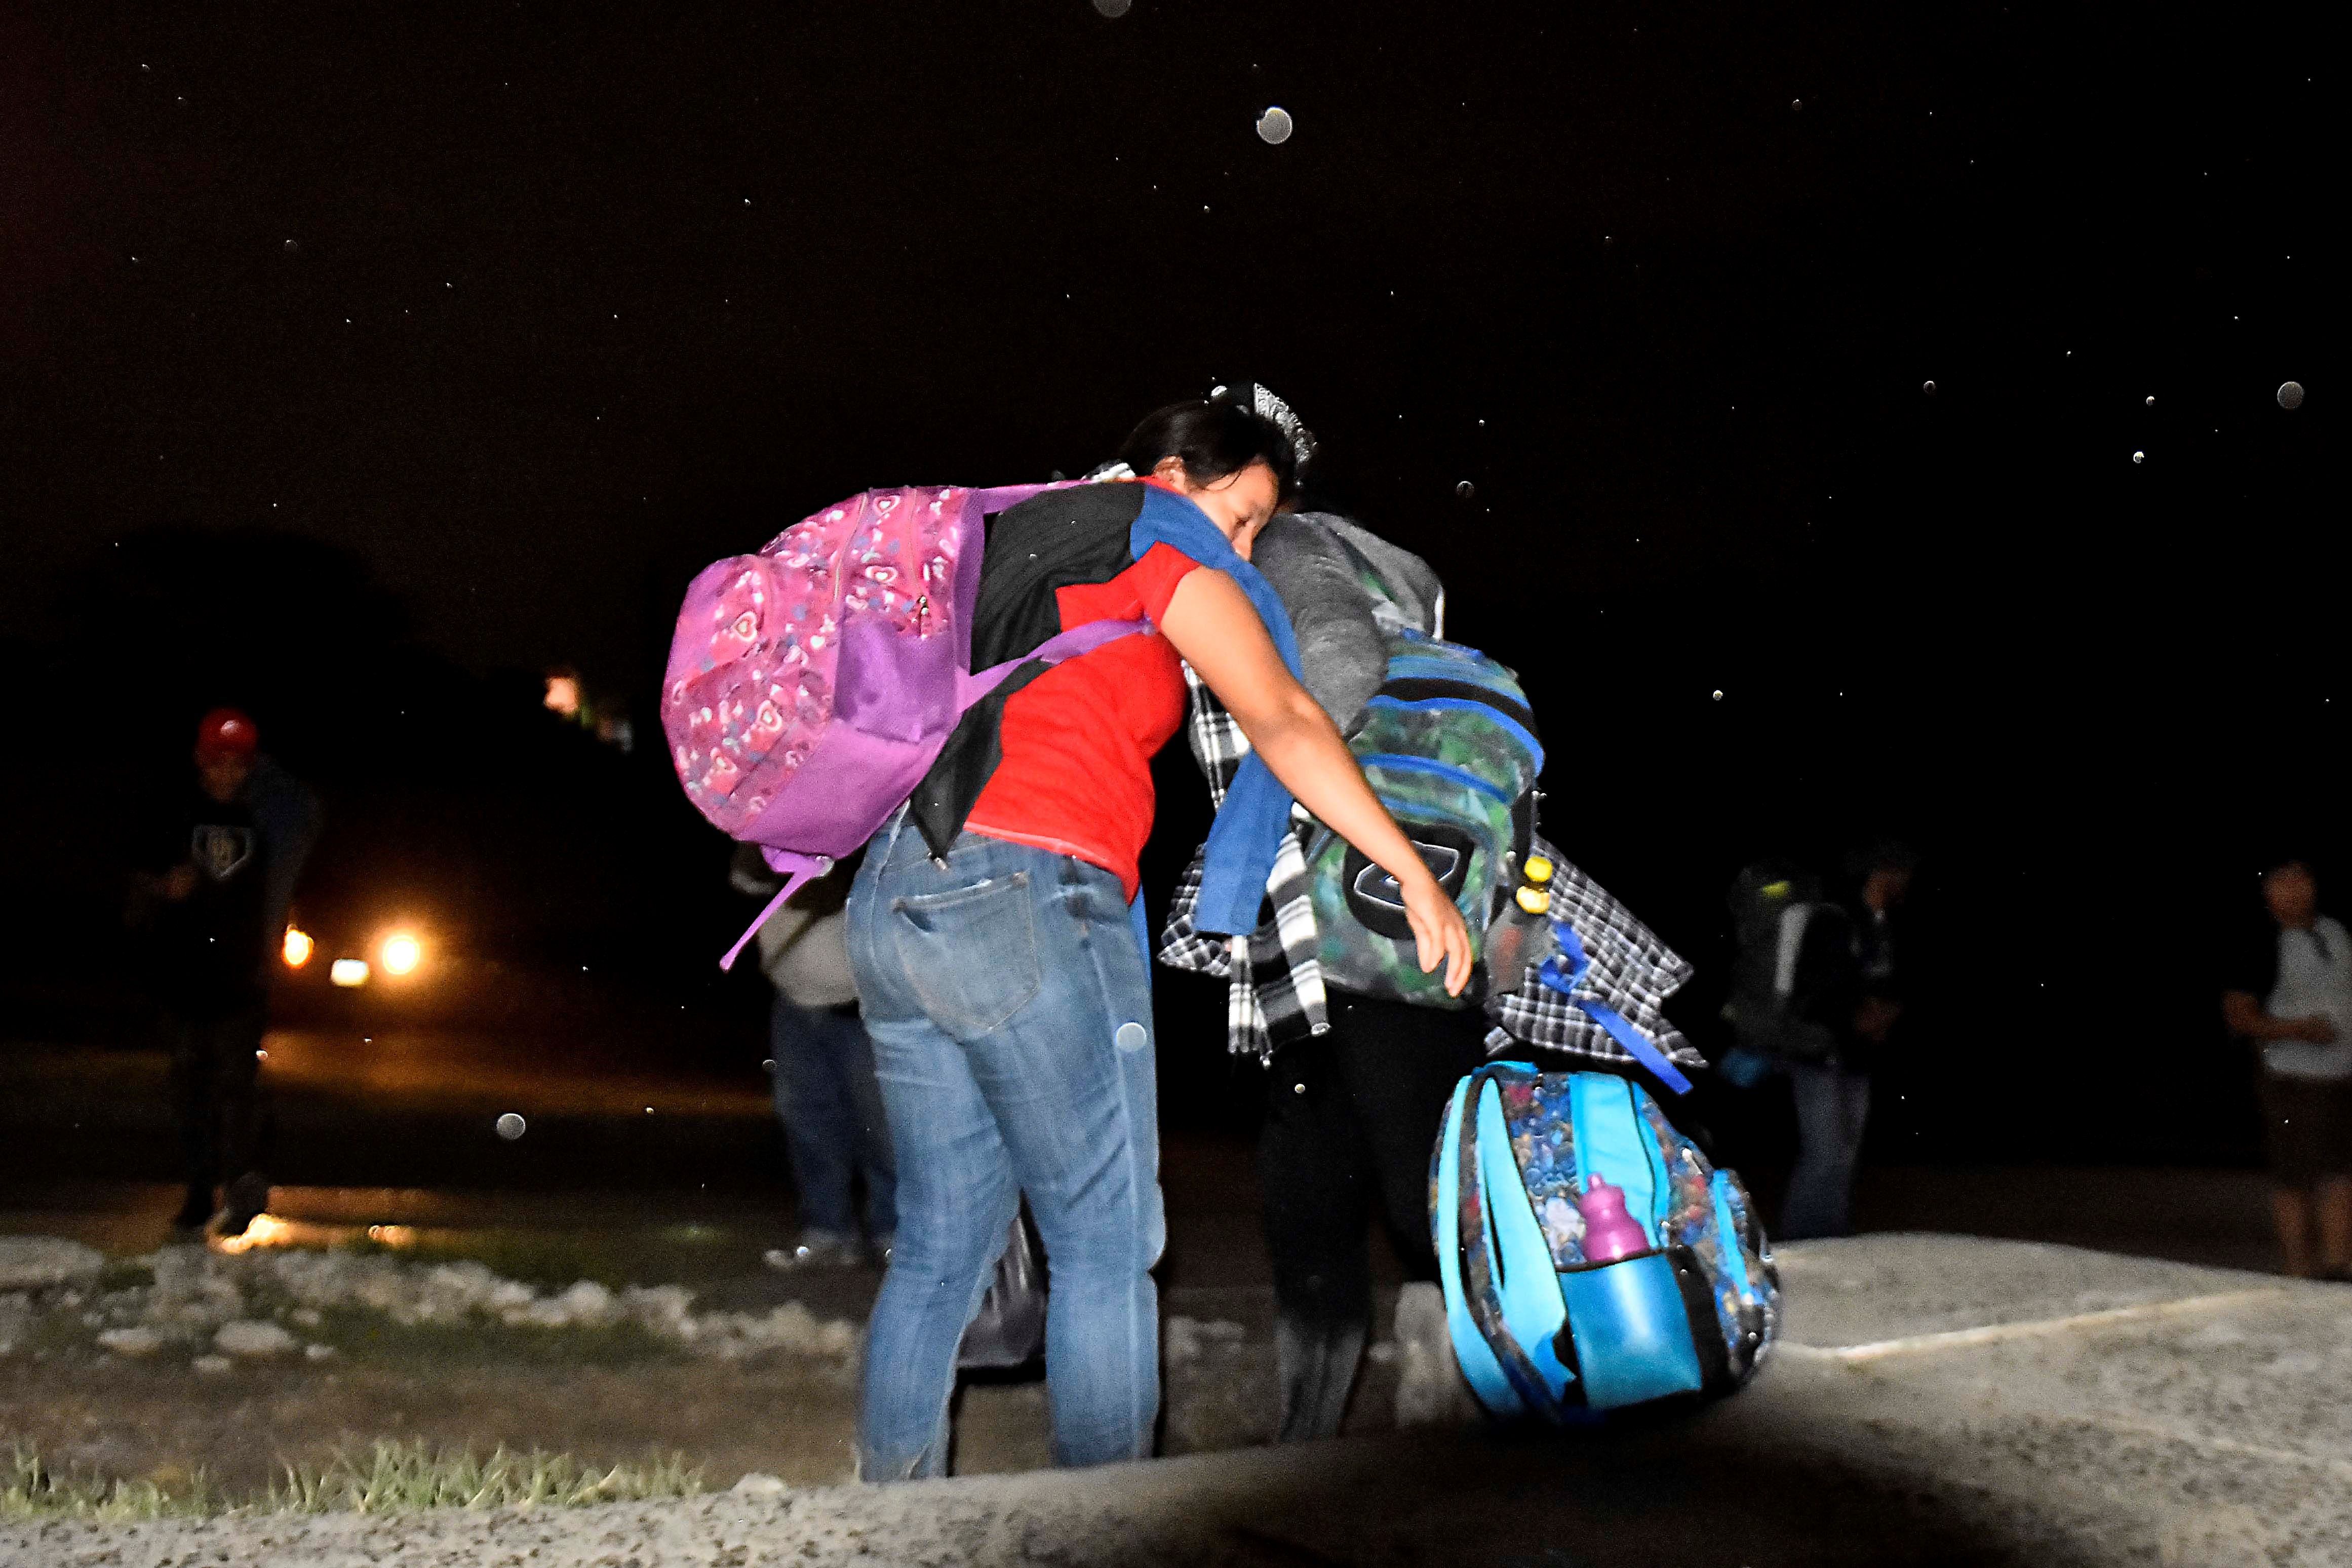 La semana pasada se formó una caravana que partió de San Pedro Sula, Honduras; sin embargo fue disuelta por las autoridades de ese país. (Foto Prensa Libre: EFE)